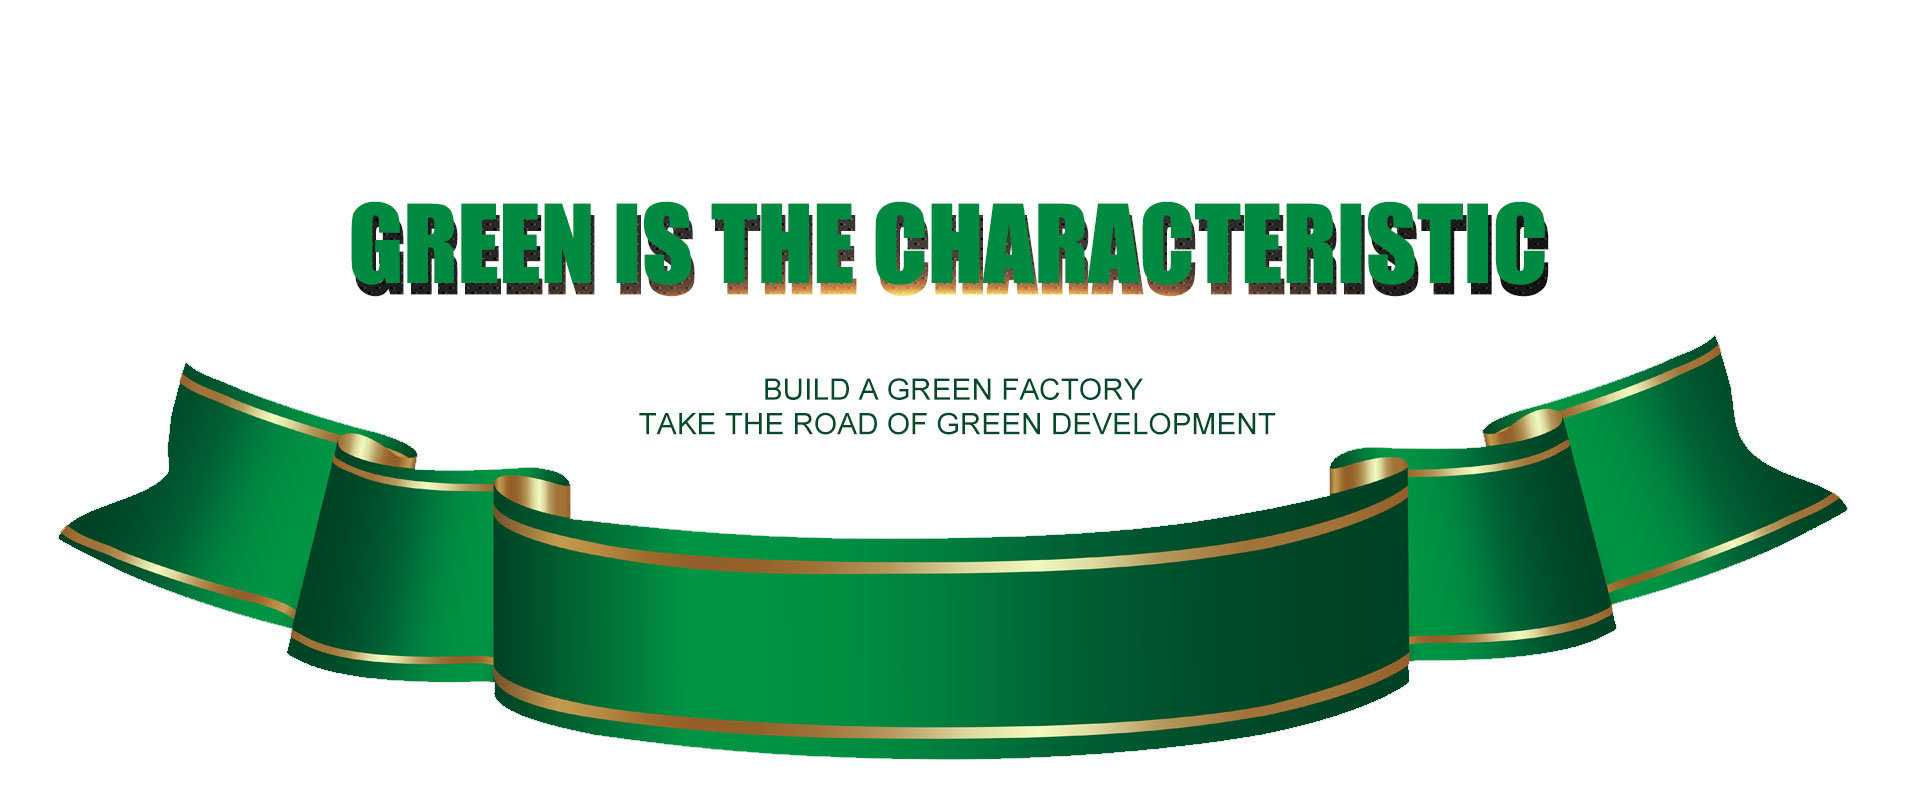 Zelena je karakteristika